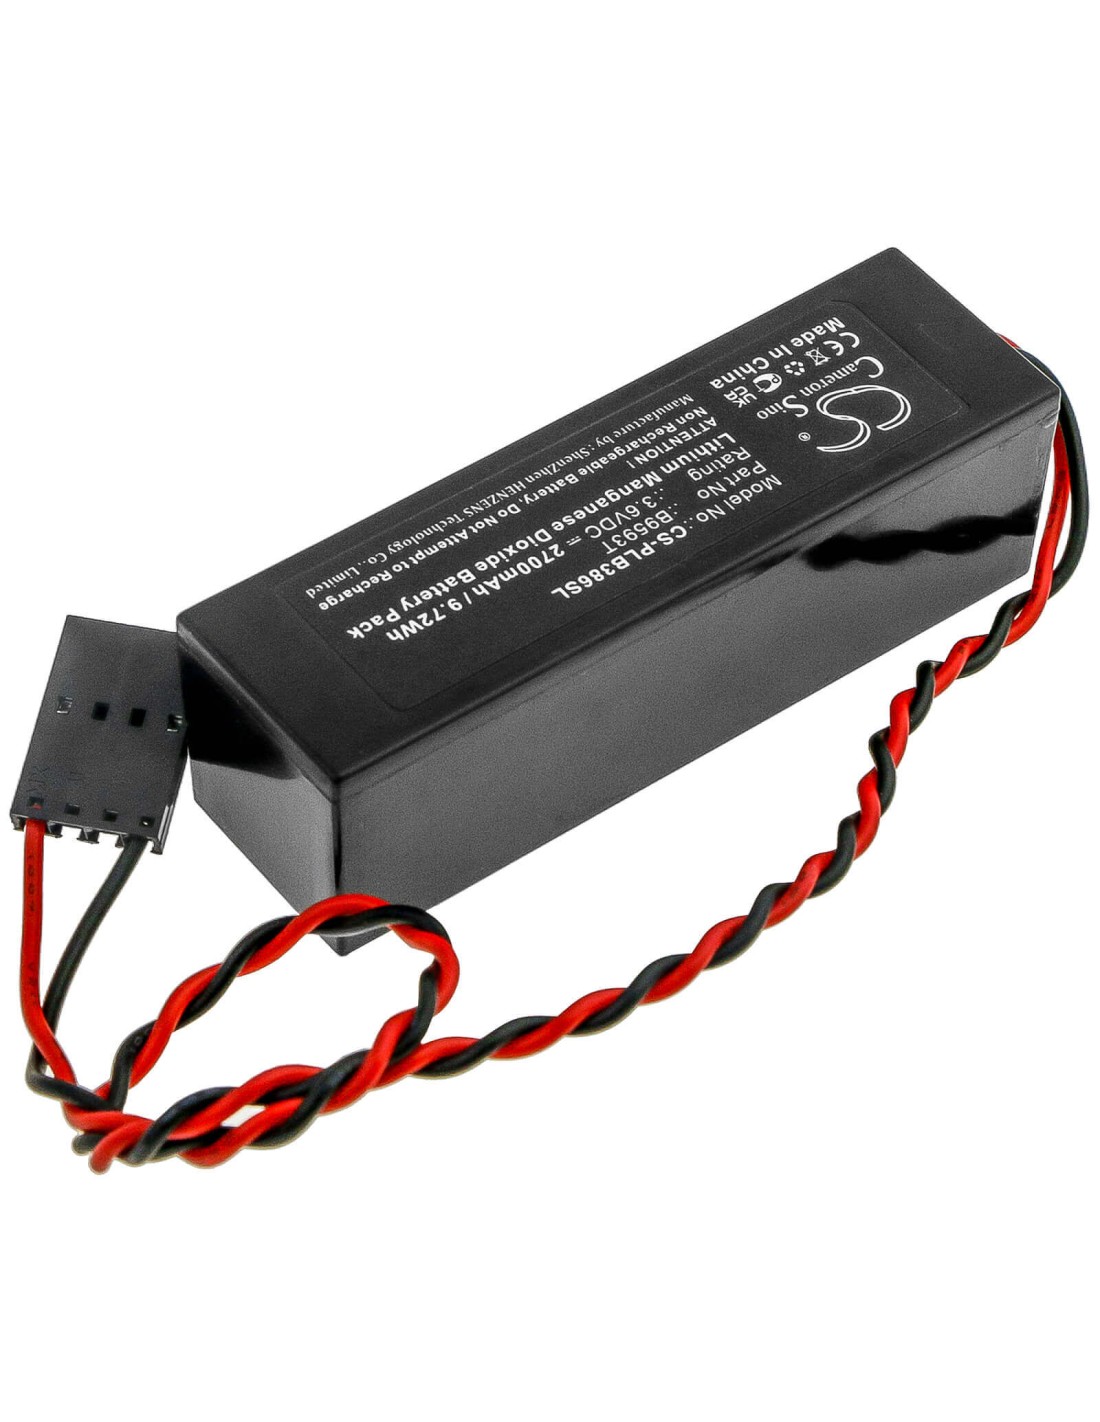 Battery for Ds Miller, B220 3.6V, 2700mAh - 9.72Wh